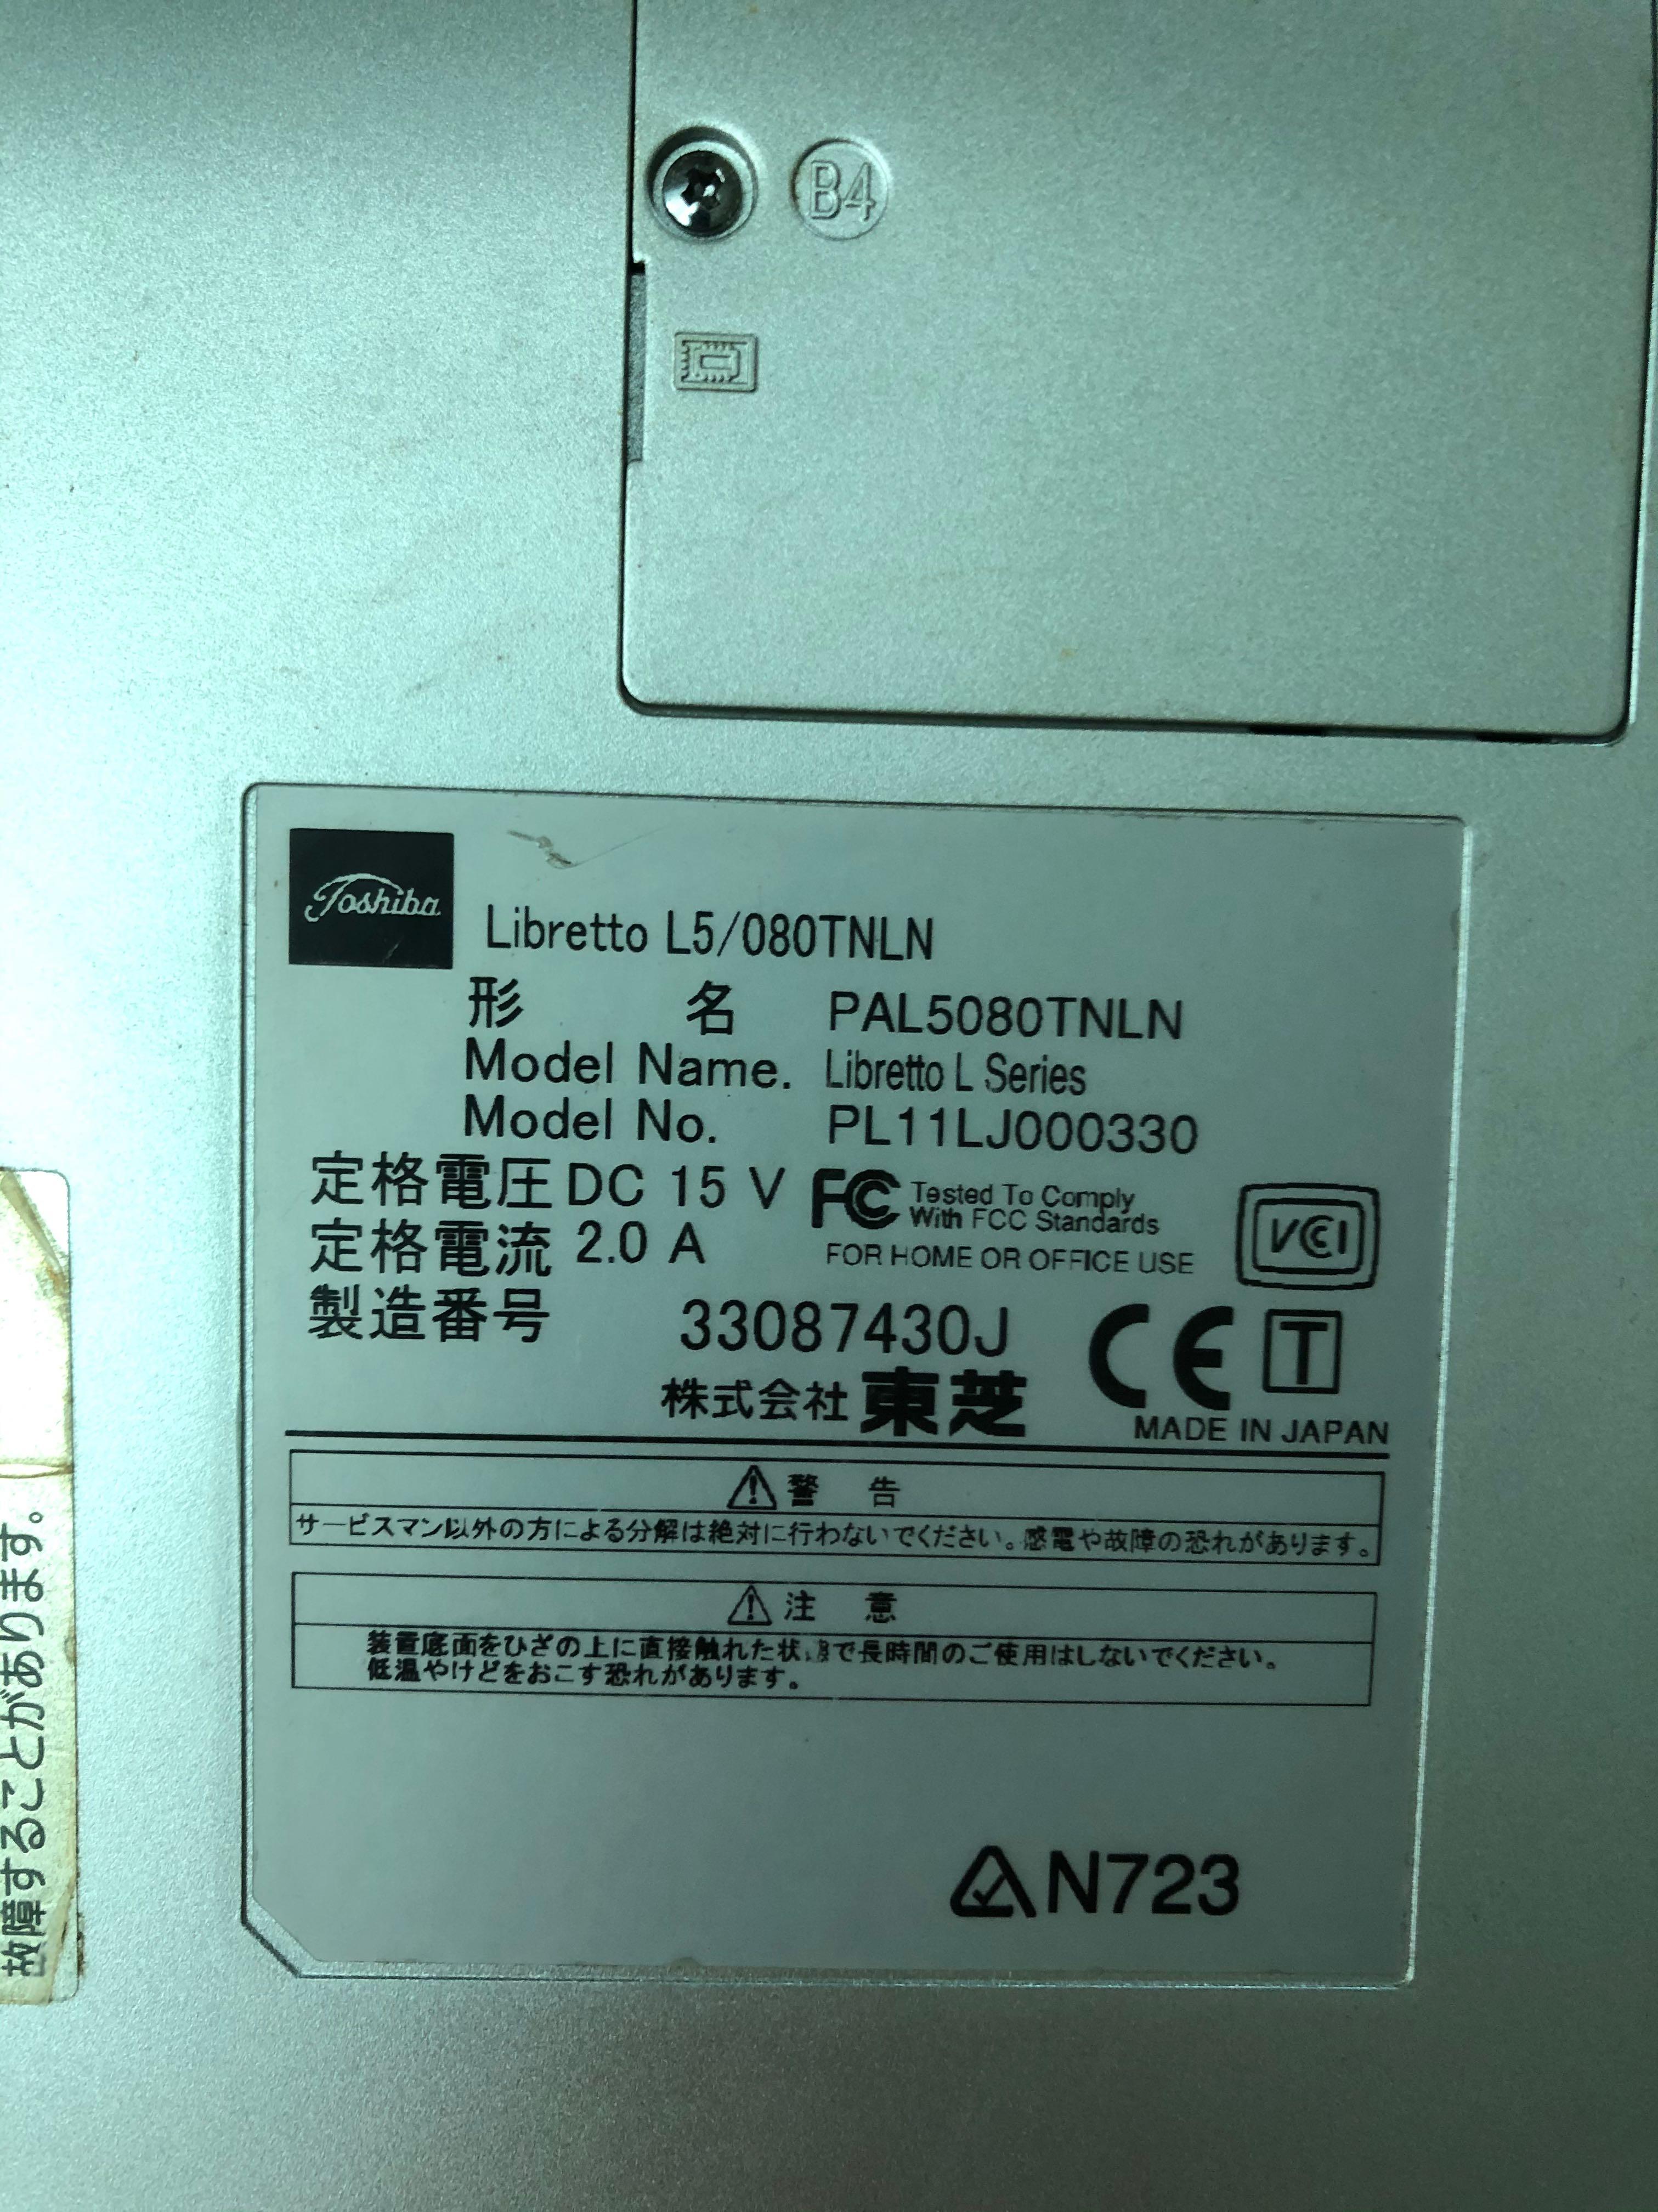 Toshiba Libretto L5